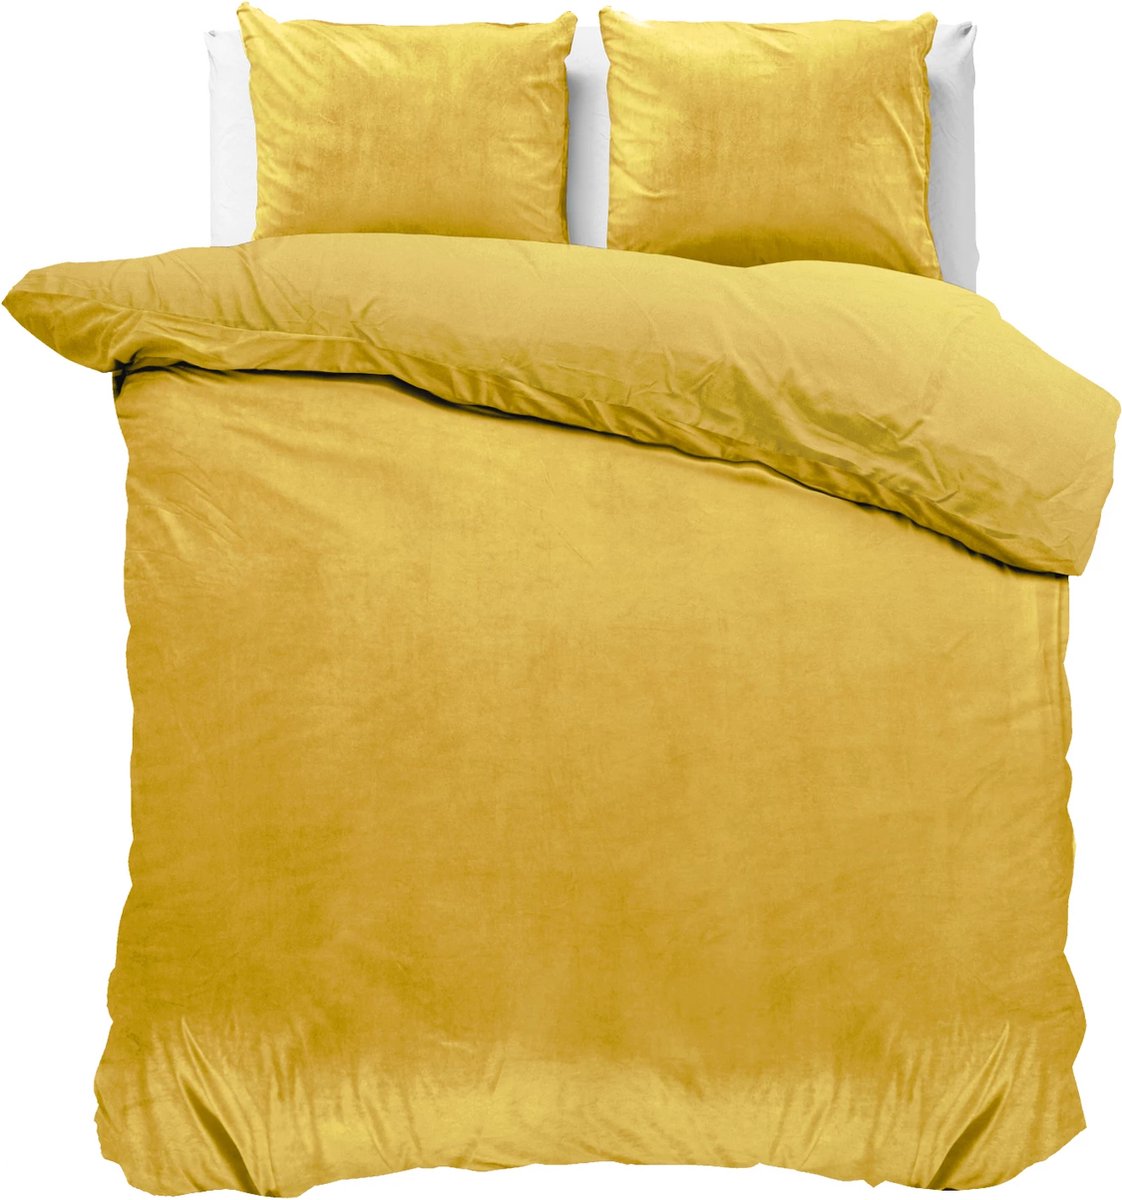 Fluweel zachte velvet dekbedovertrek uni goud - 200x200/220 (tweepersoons) - super fijn slapen - stijlvolle uitstraling - luxe kwaliteit - met handige drukknopen